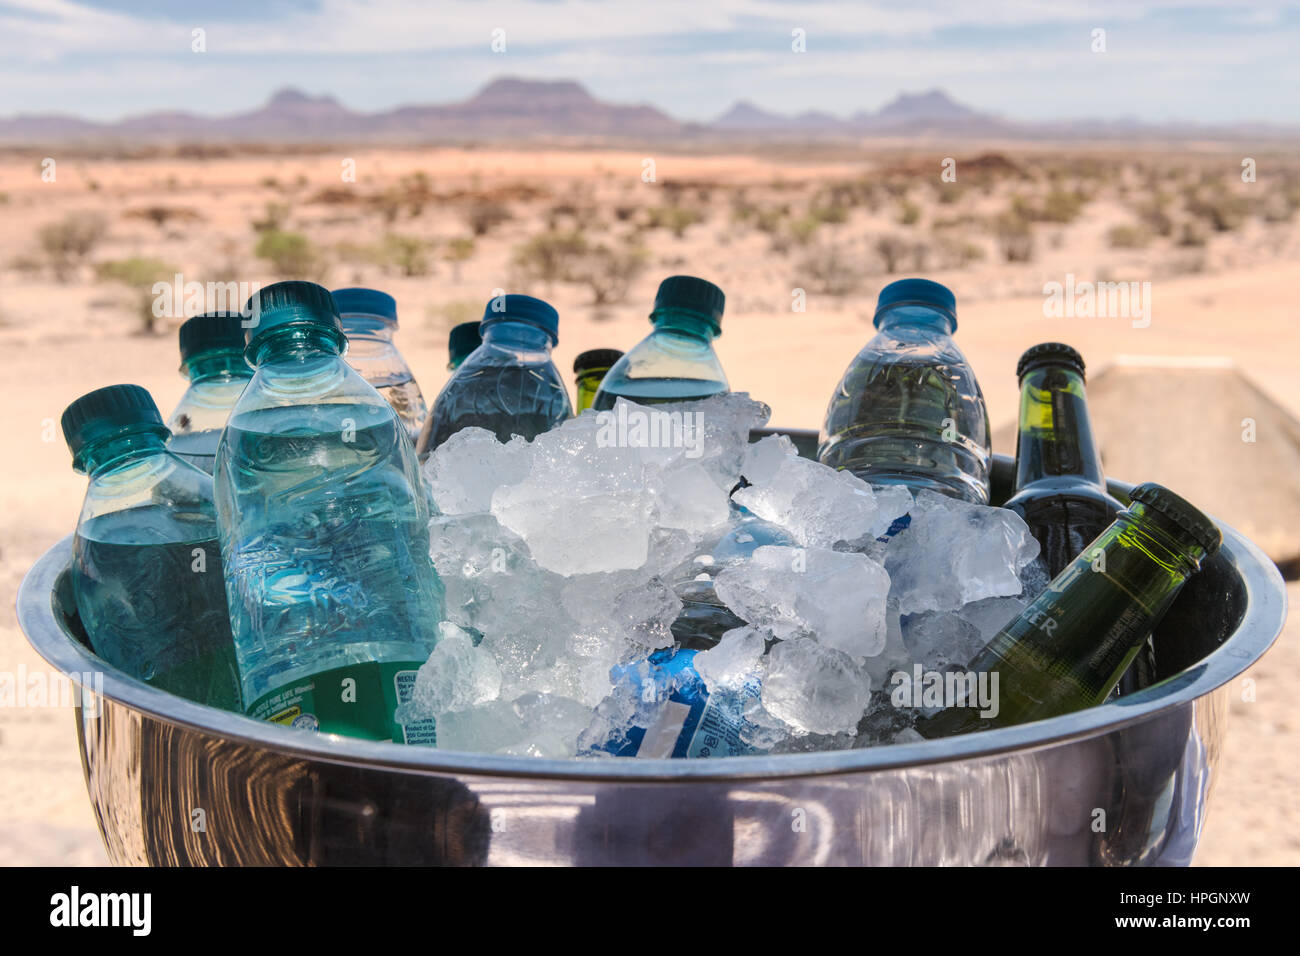 Flaschen Wasser und Bier in einem Edelstahl Schüssel mit Eis zu kühlen. Dargestellt an einem heißen Sommertag Doro Nawas Camp, Damaraland, Namibia. Stockfoto